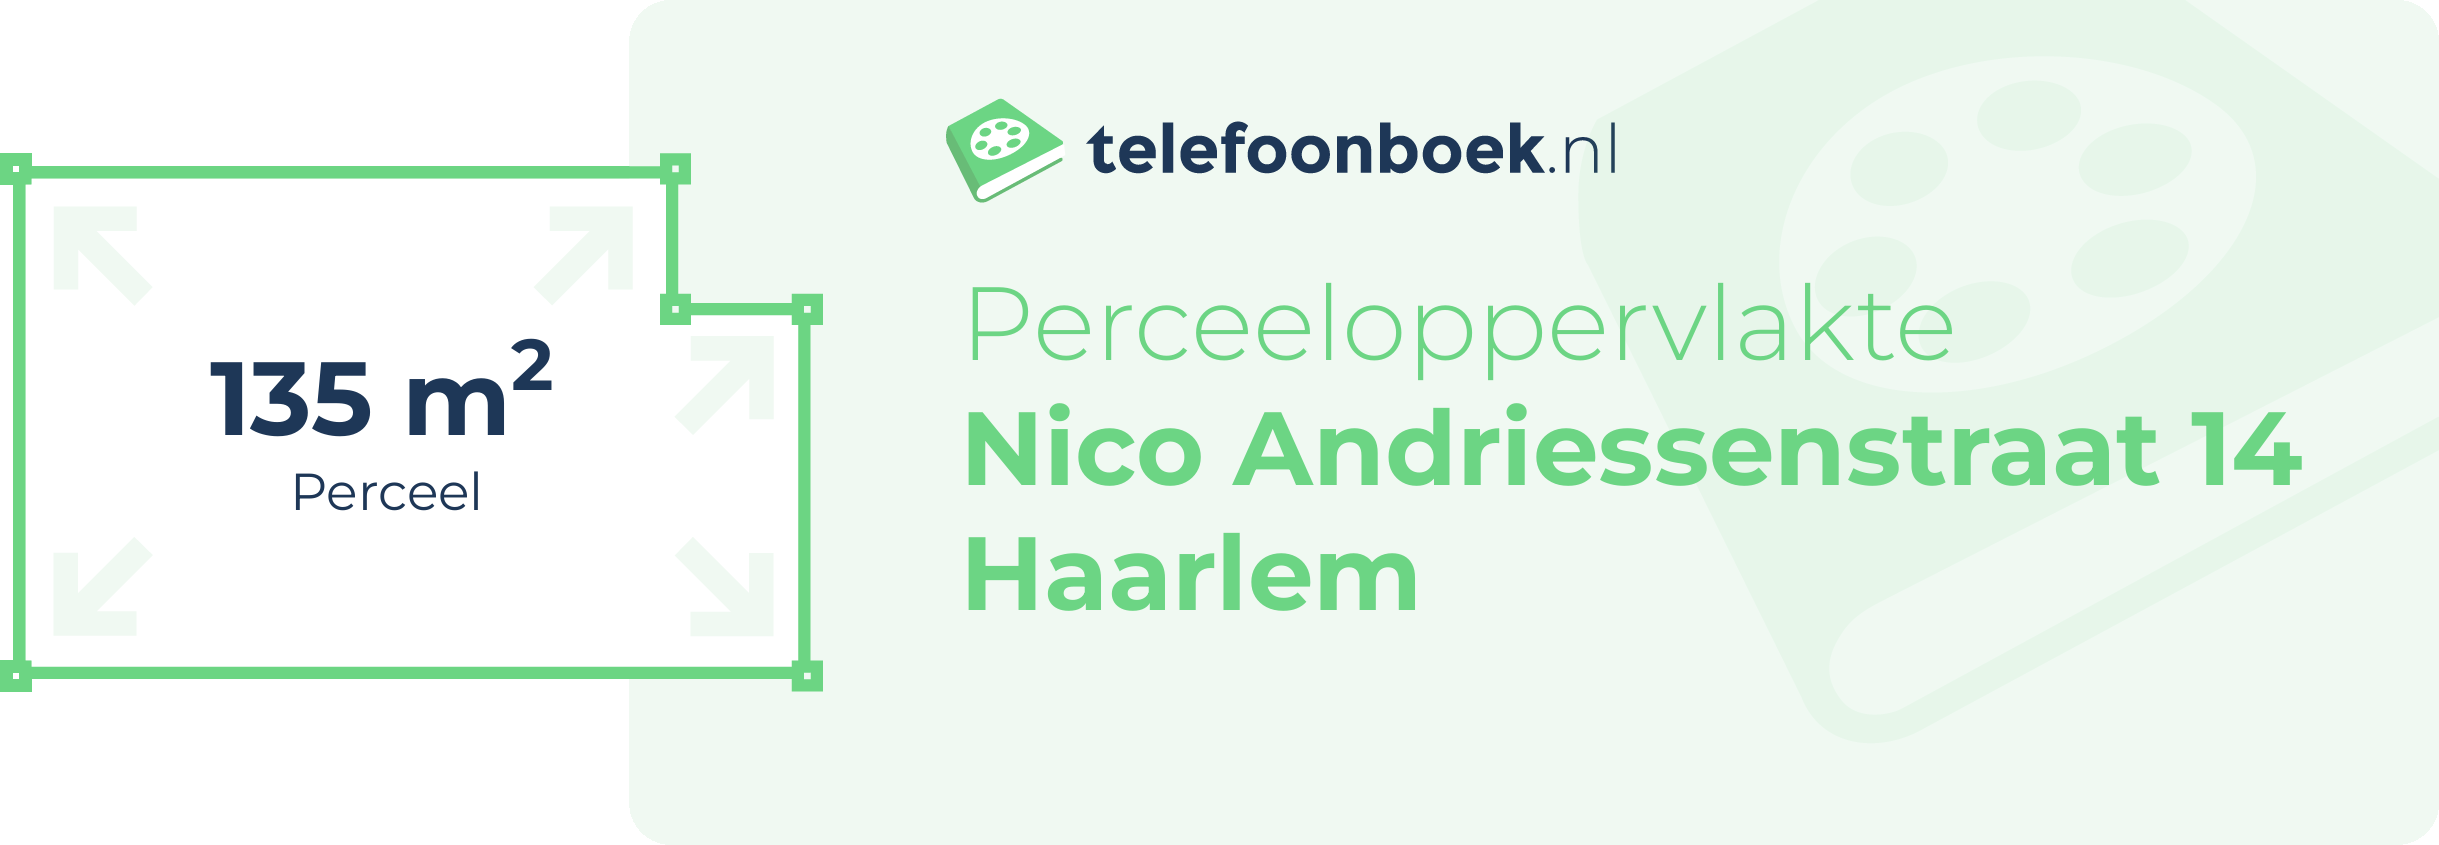 Perceeloppervlakte Nico Andriessenstraat 14 Haarlem